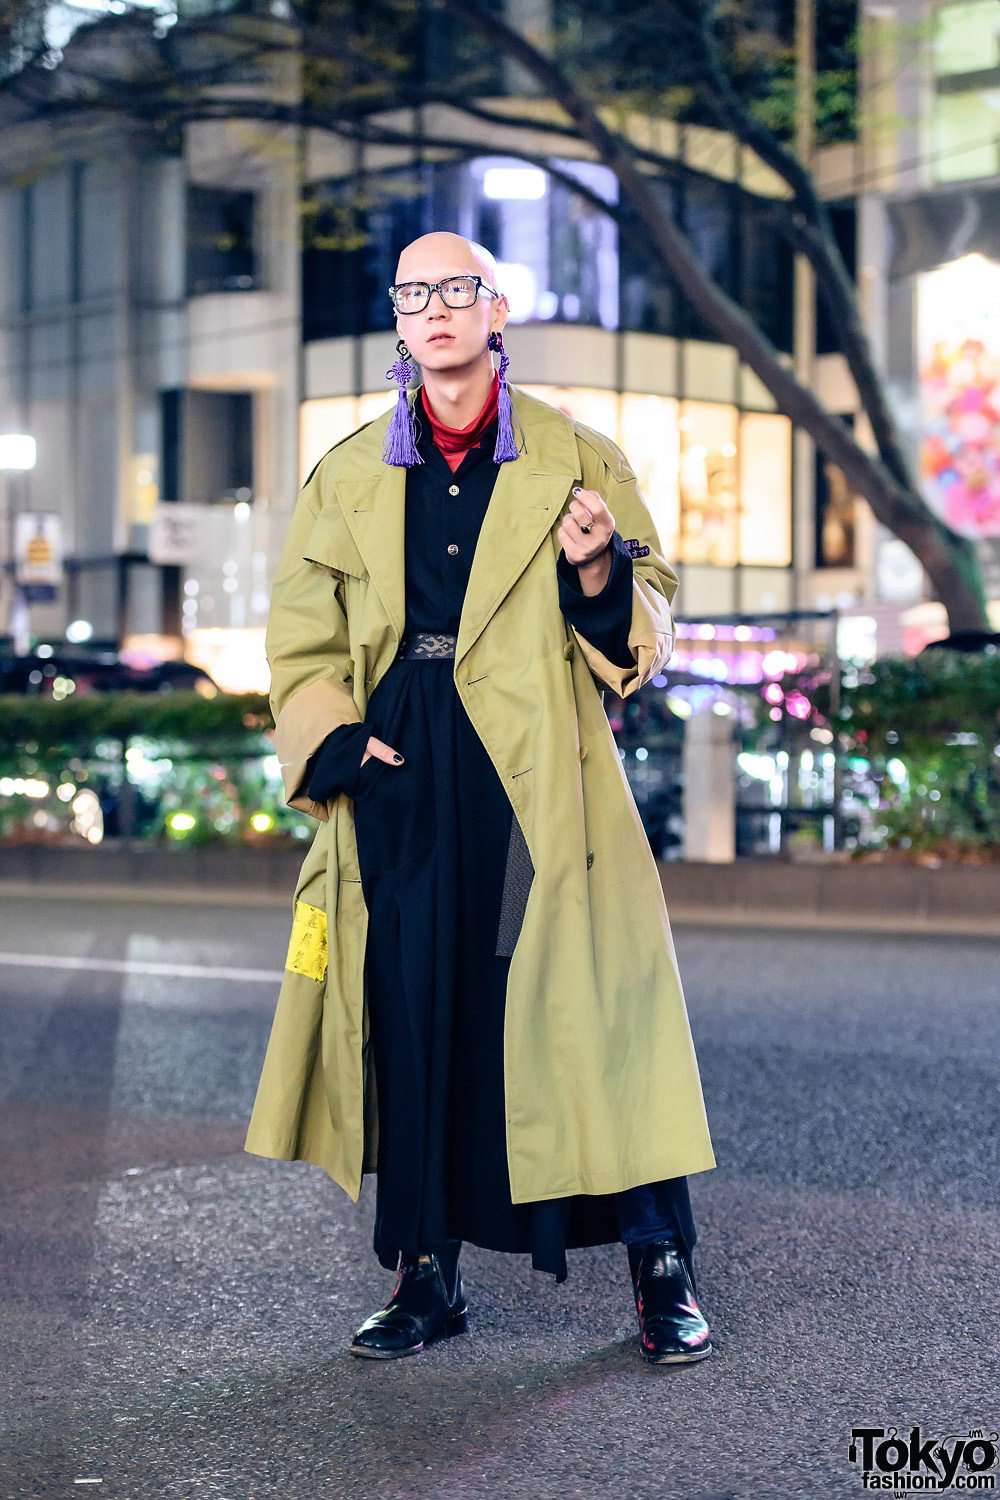 Tokyo Menswear Street Style w/ Bull Horn Snail Earrings, Tassel Earrings, Custom Vintage Overcoat, Belted Maxi Coat, Yohji Yamamoto & Loake Chelsea Boots